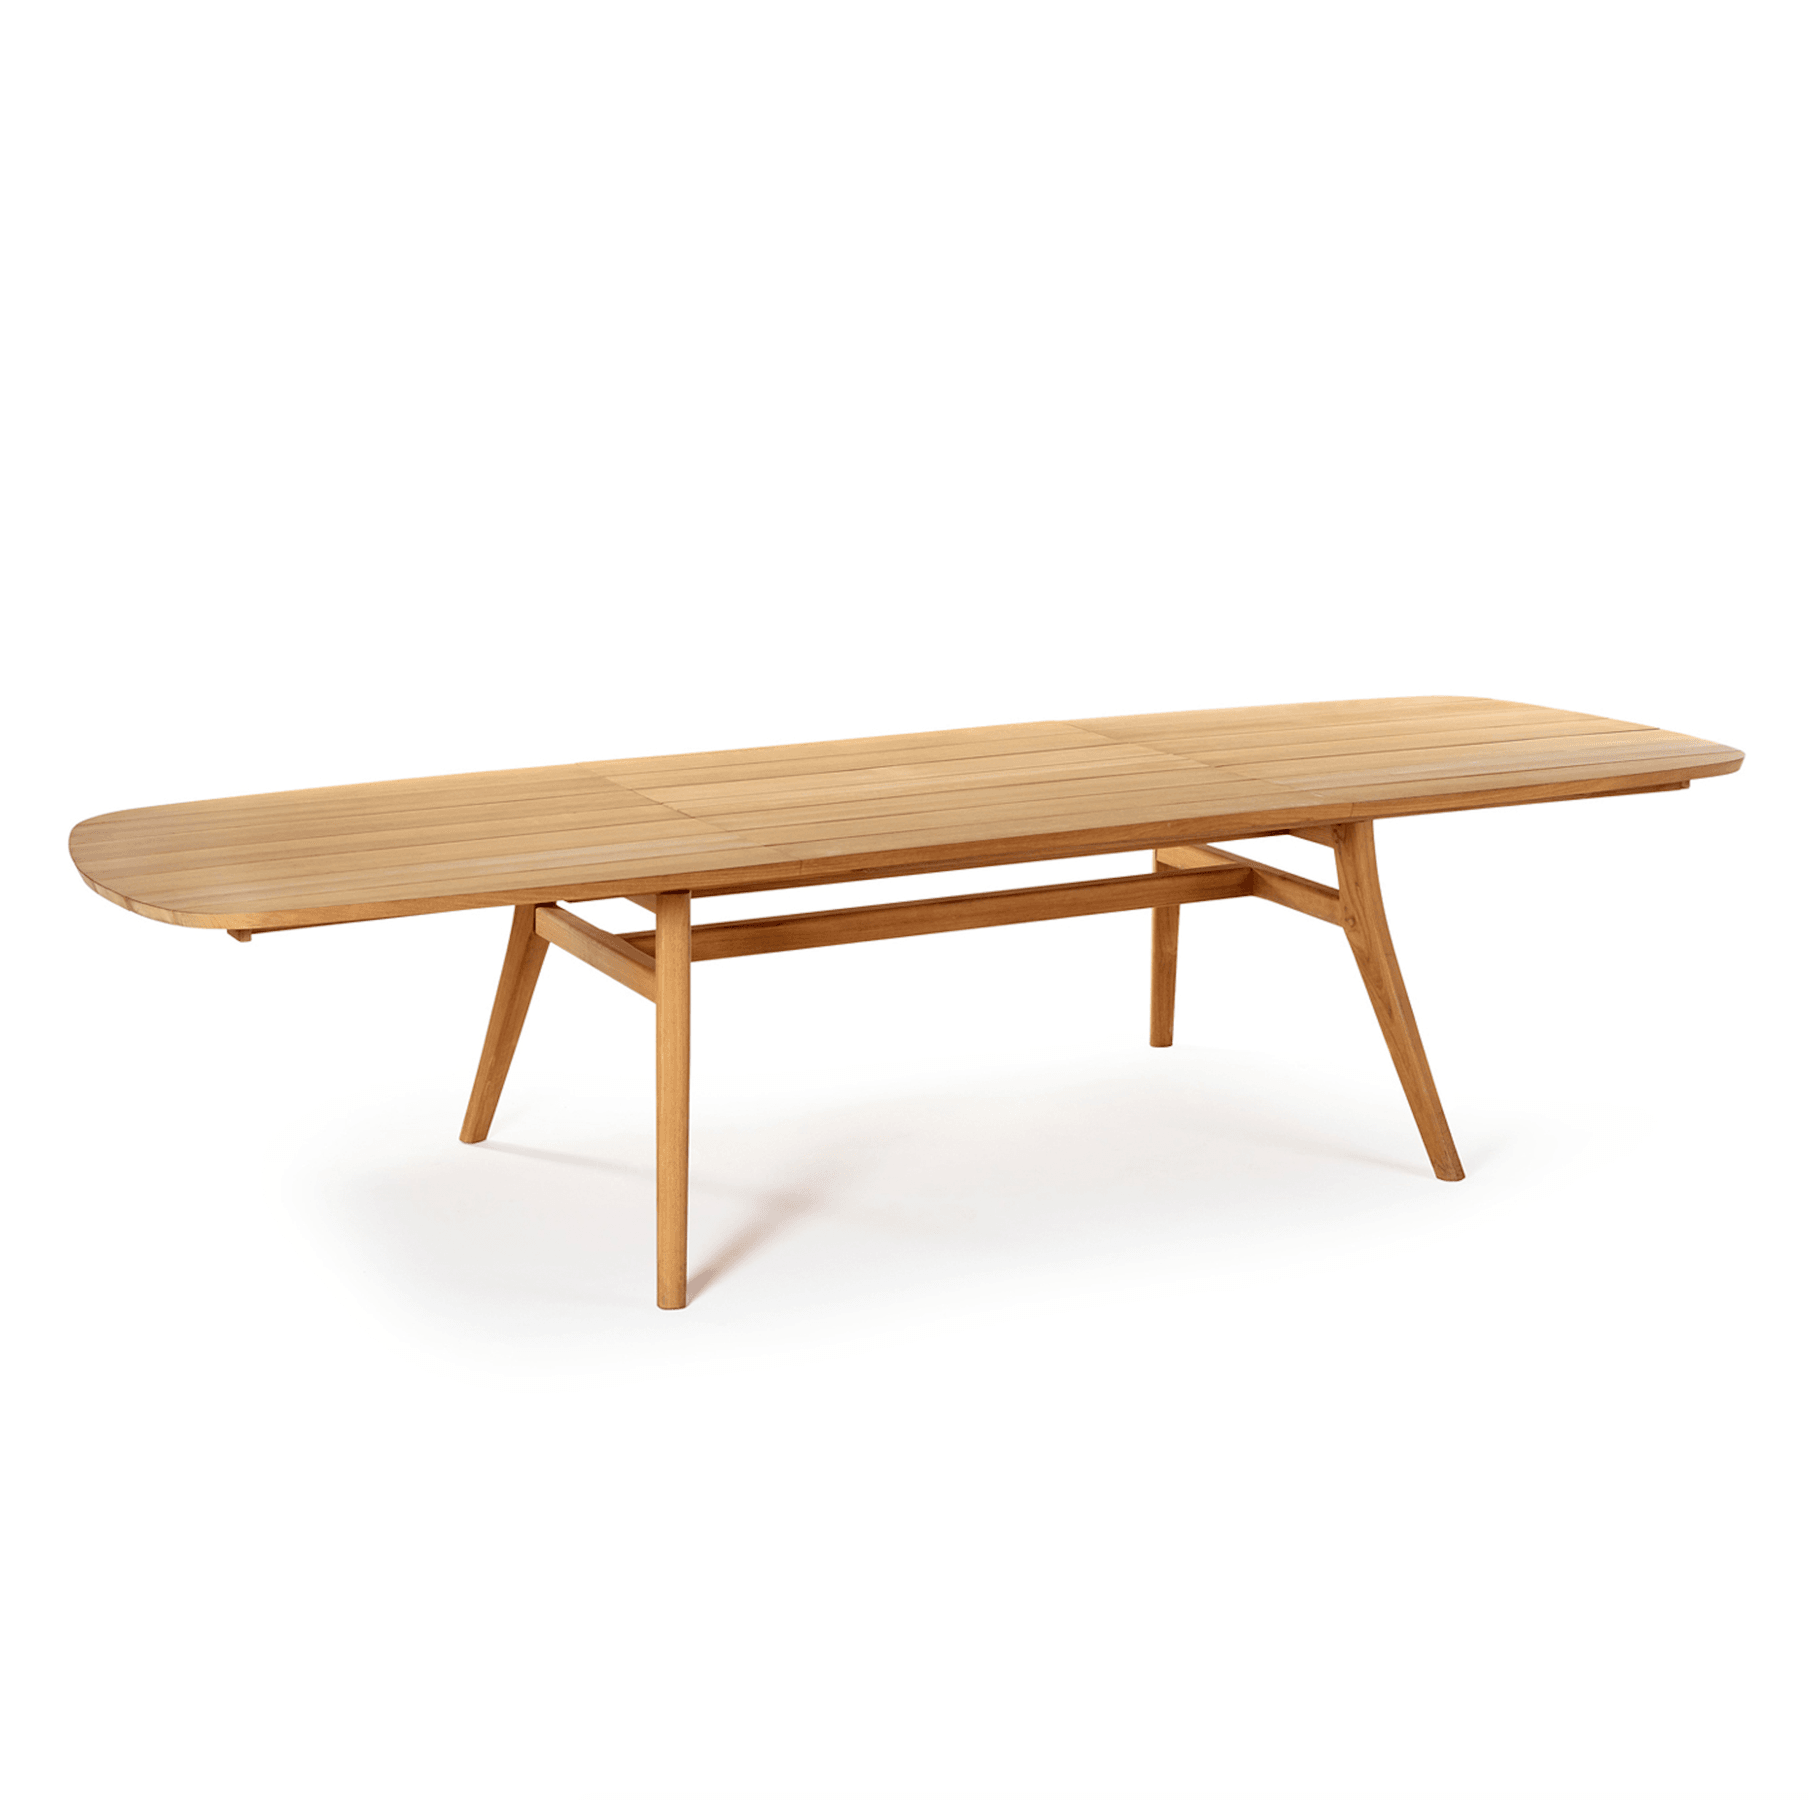 Zidiz Extendable Table